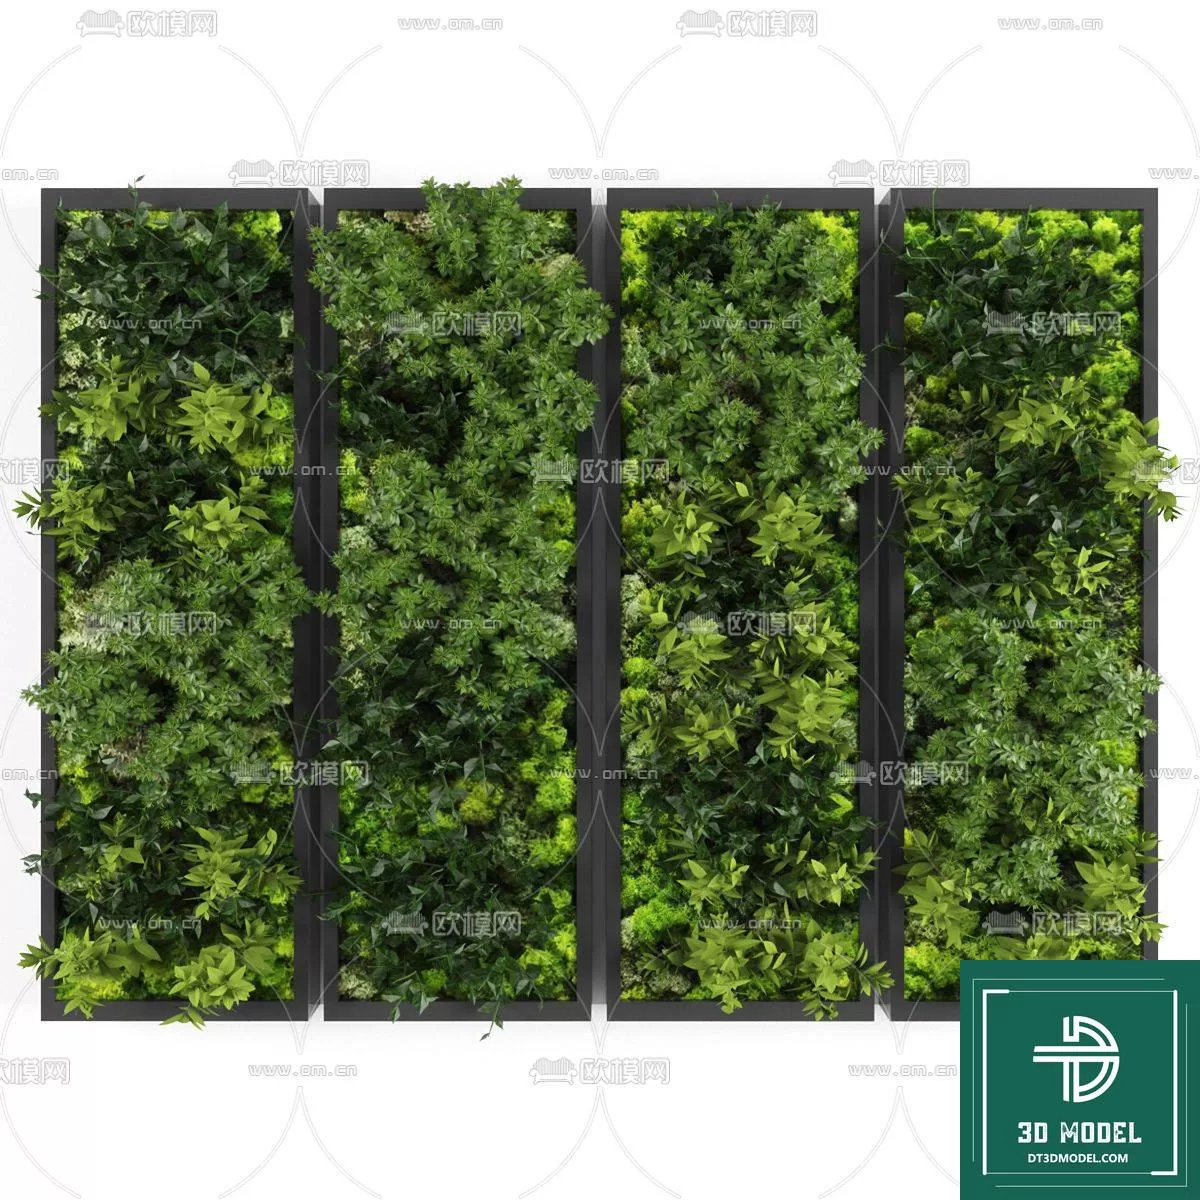 VERTICAL GARDEN – FITOWALL PLANT 3D MODEL – 083